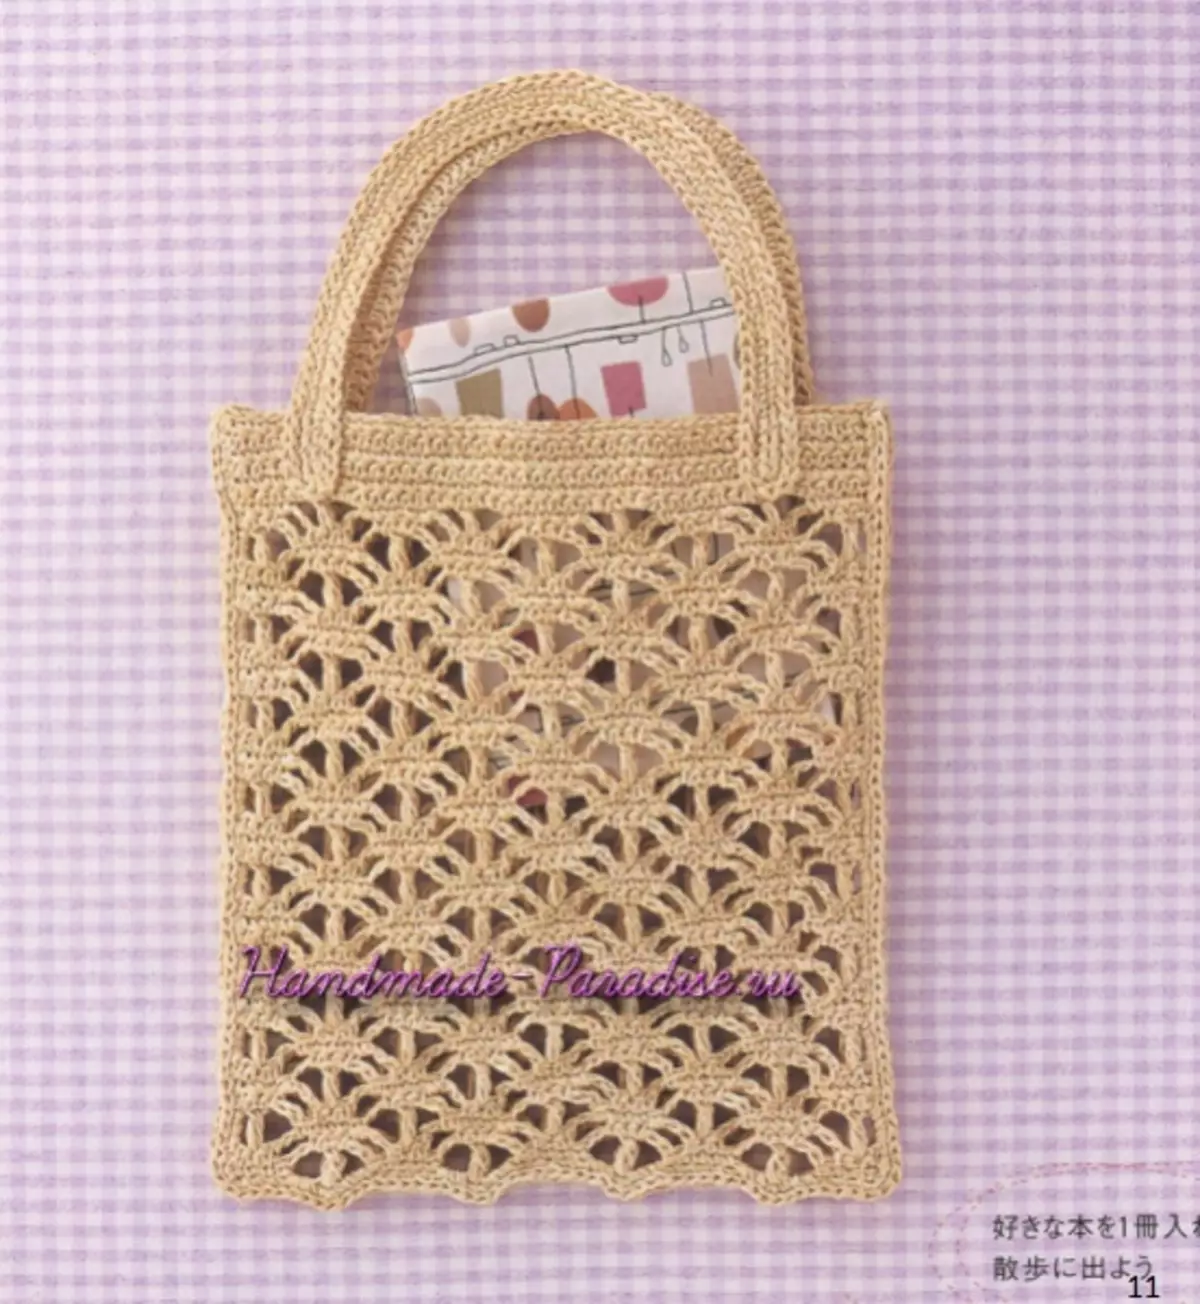 25 Handbags Crochet. Majalah dengan skema